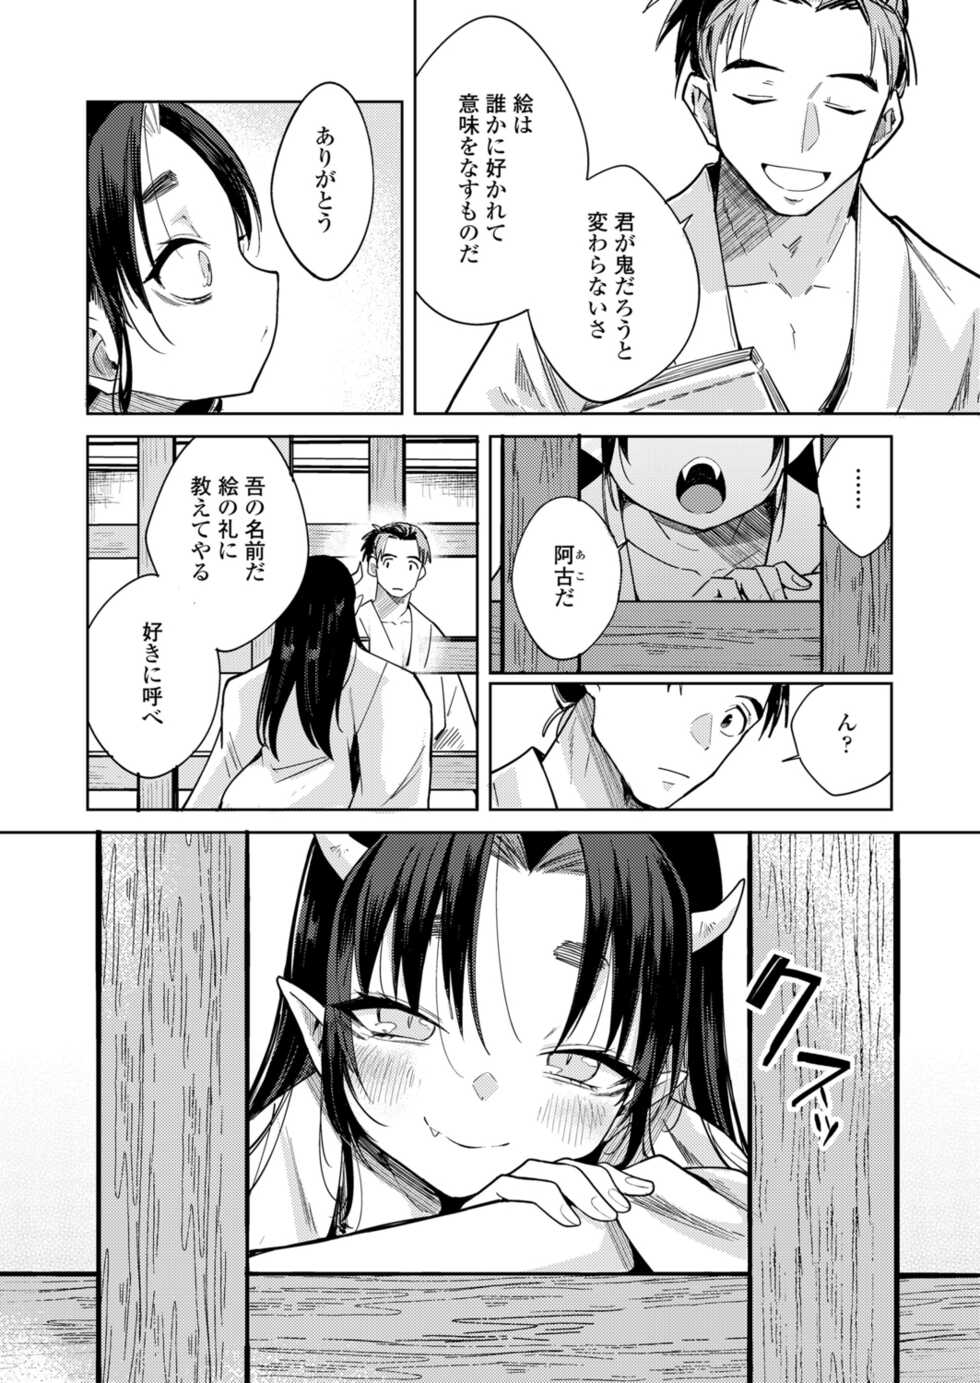 Towako 12 [Digital] - Page 18